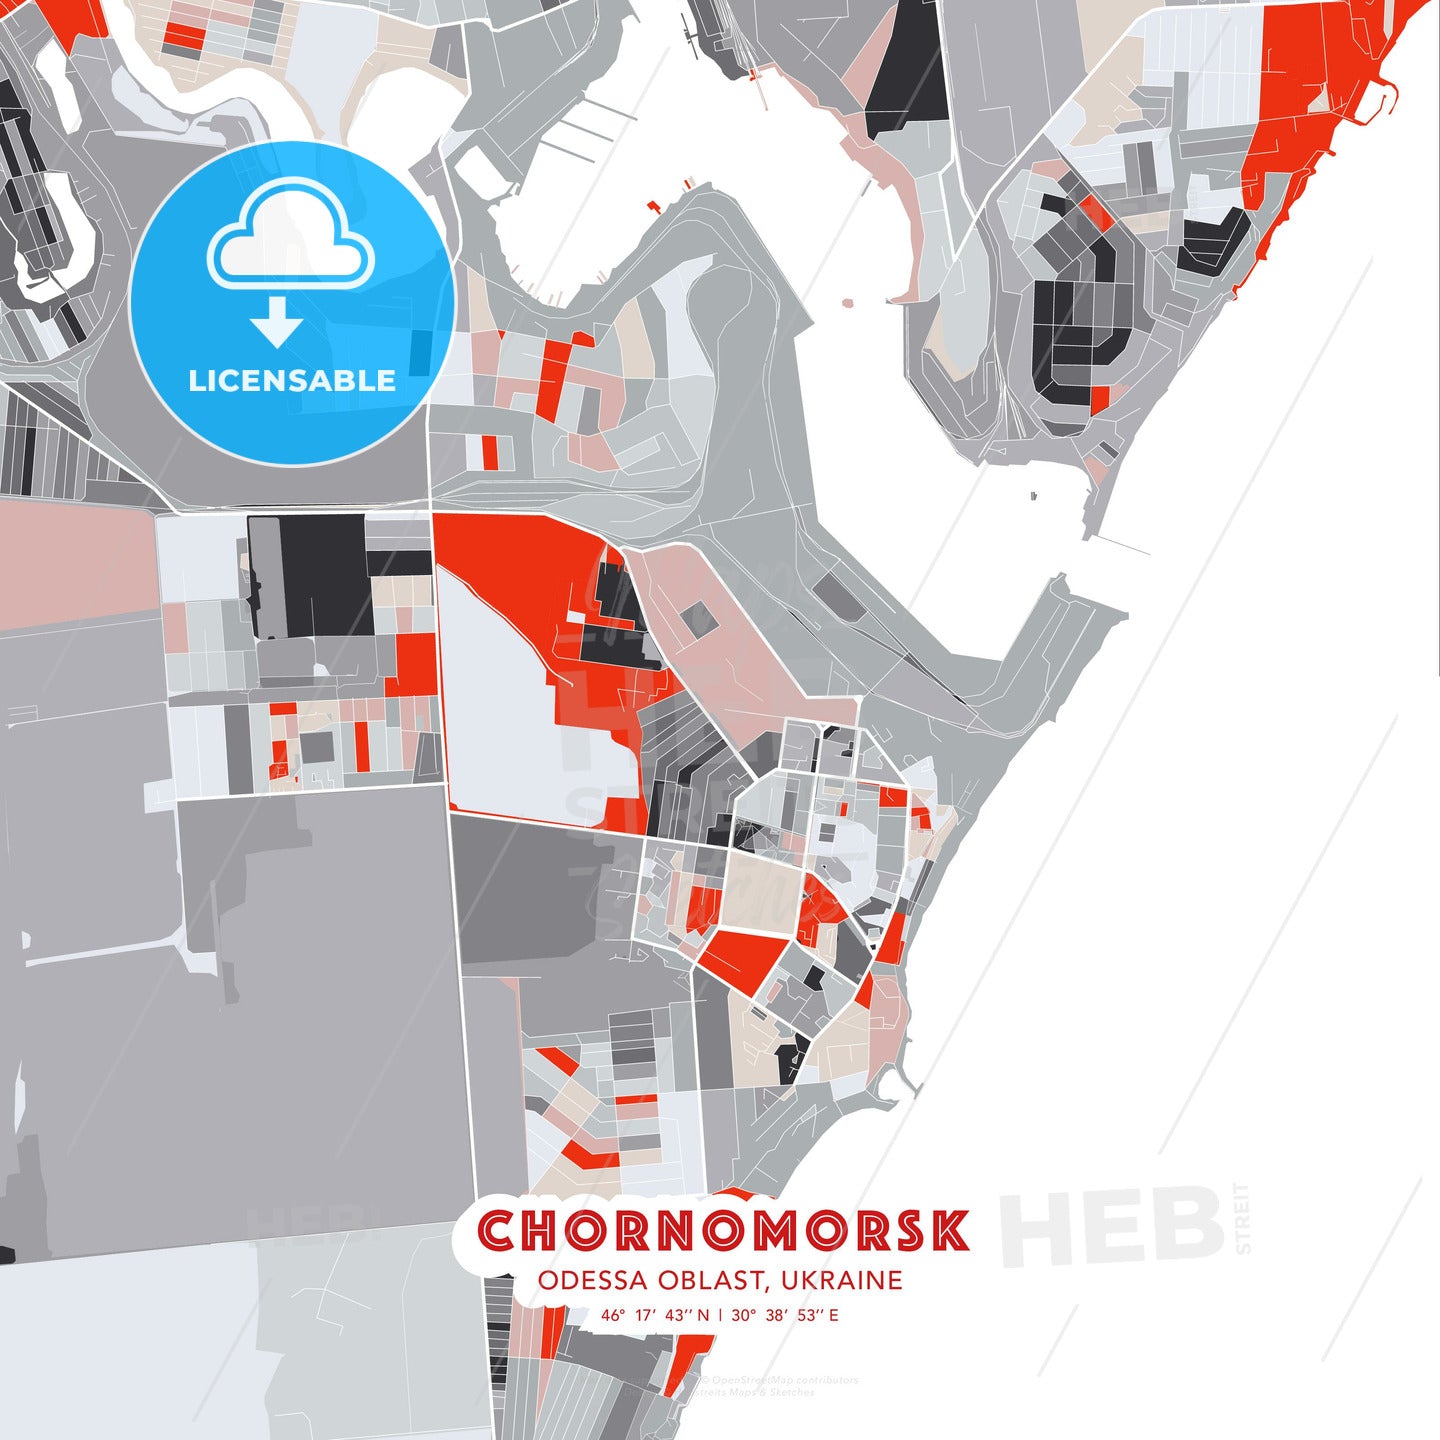 Chornomorsk, Odessa Oblast, Ukraine, modern map - HEBSTREITS Sketches